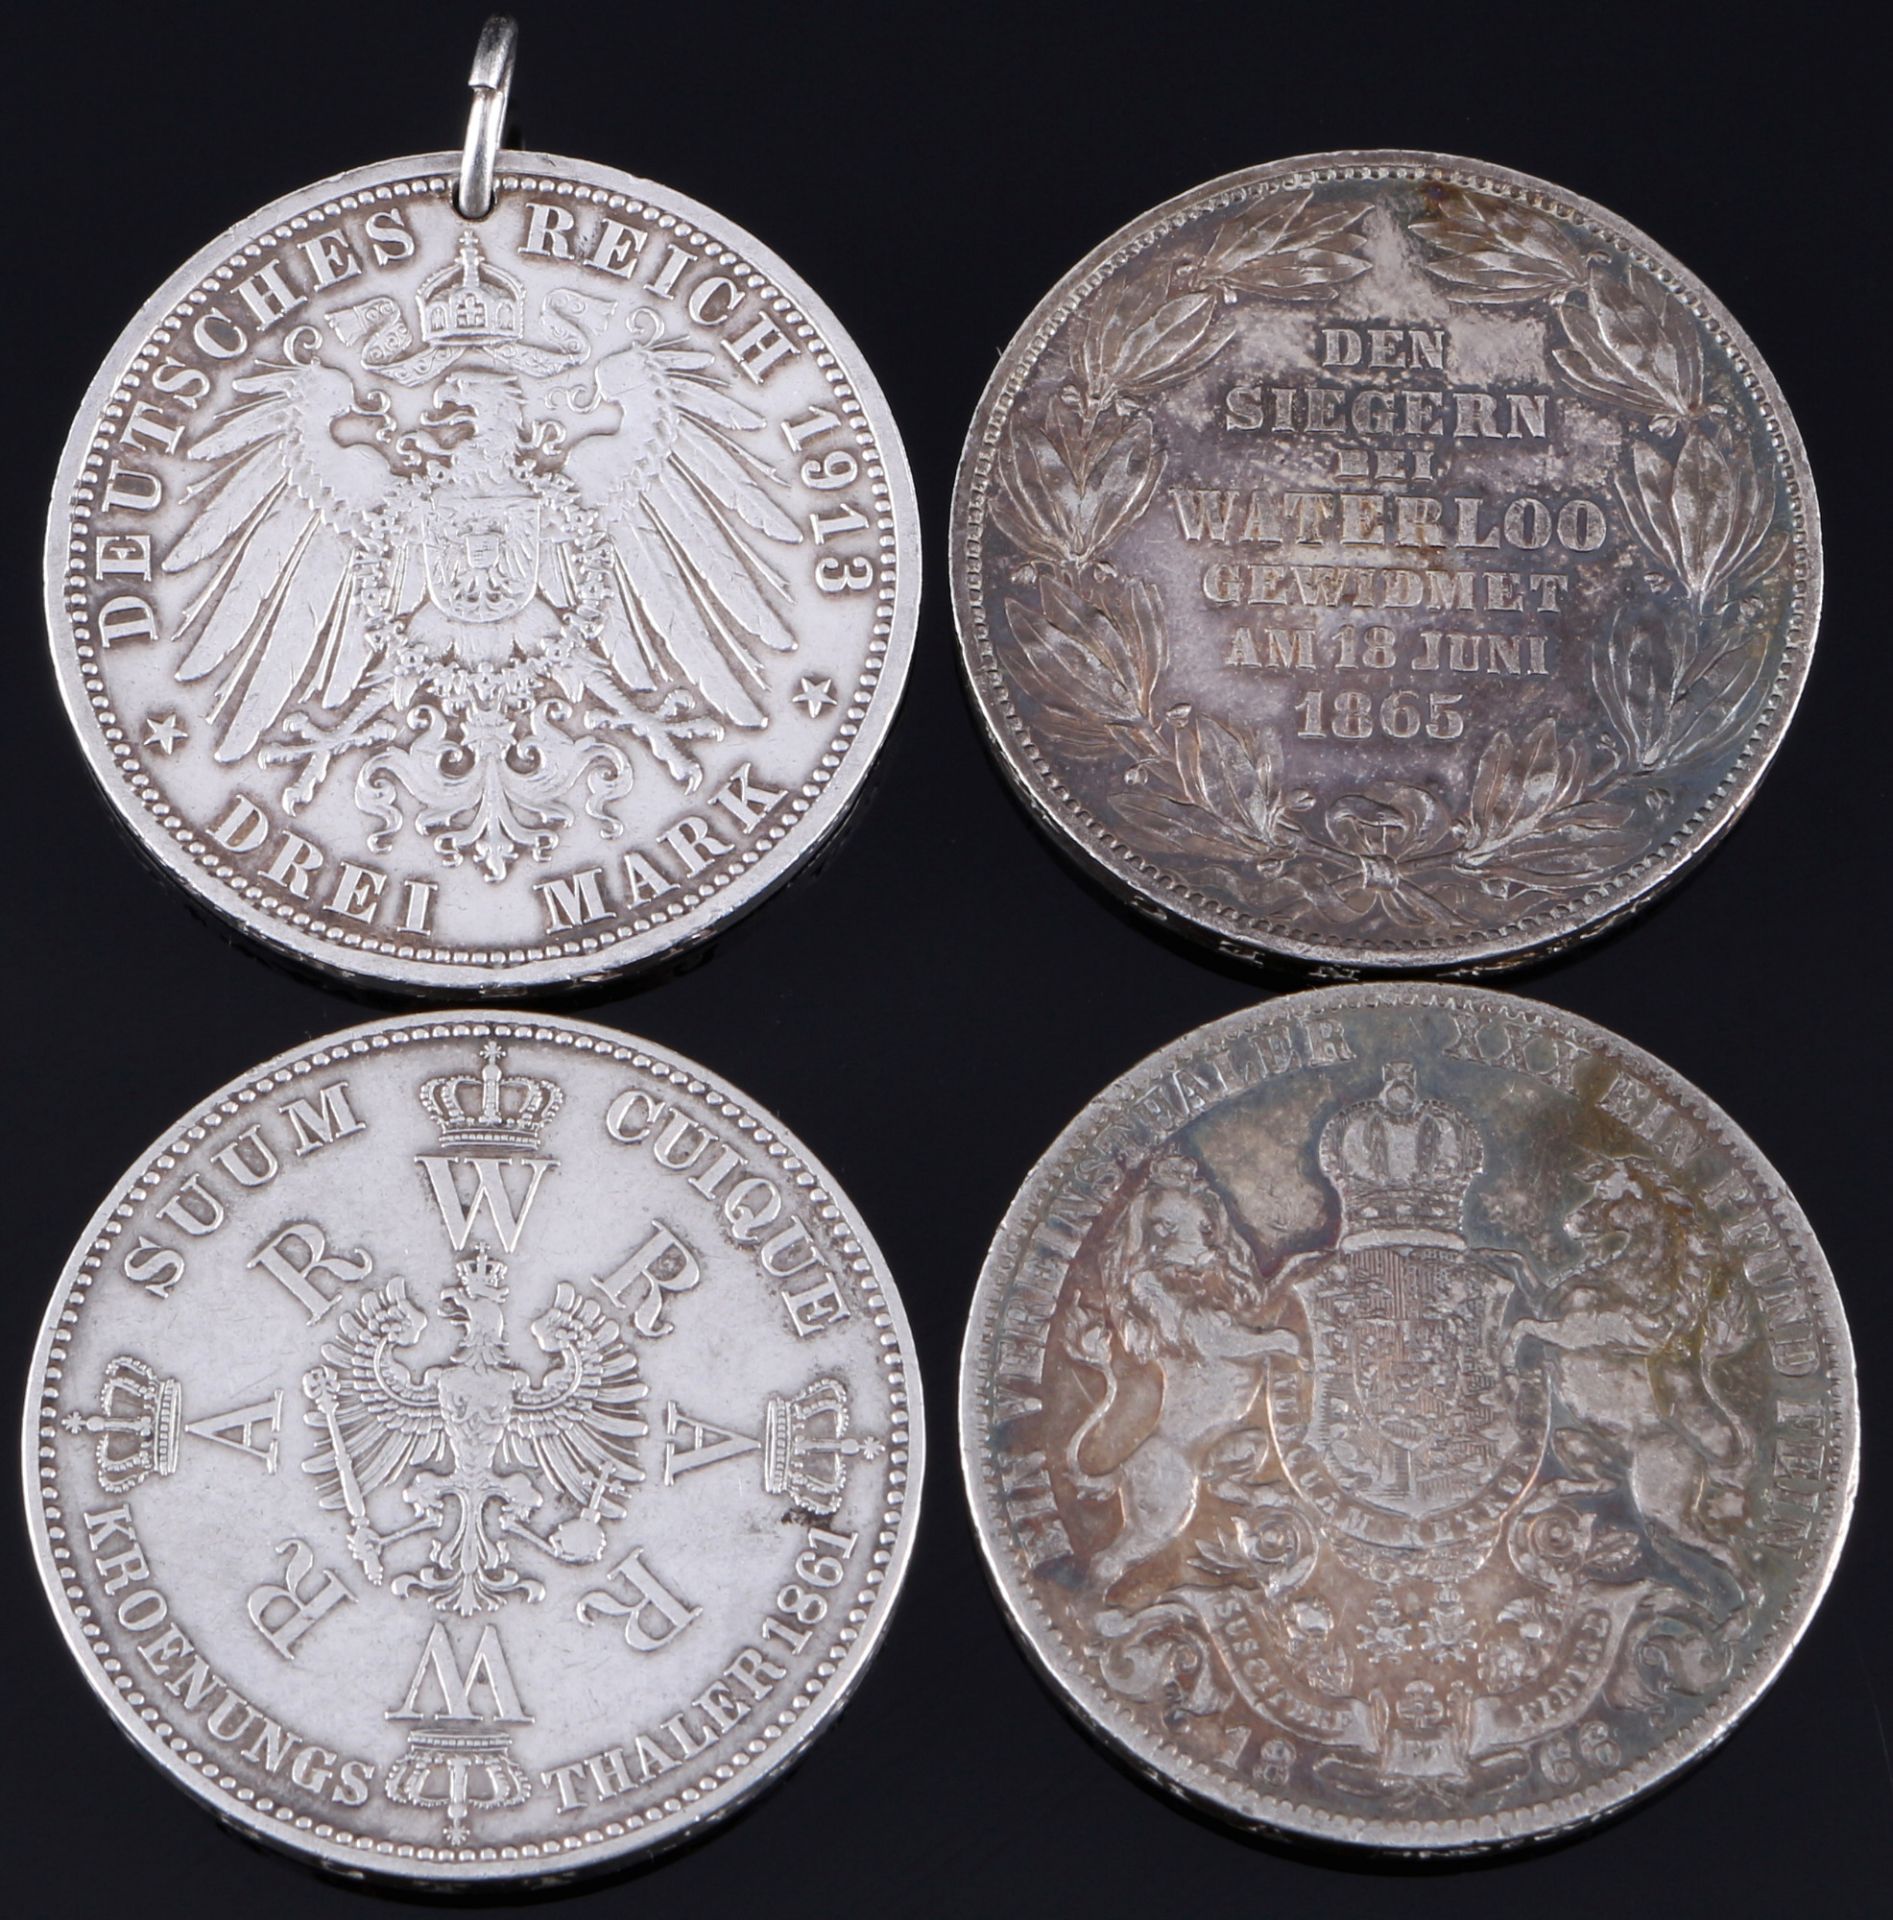 4 Silbermünzen - Deutsche Mark und preussische Taler, german / prussian silver coins, - Bild 2 aus 2